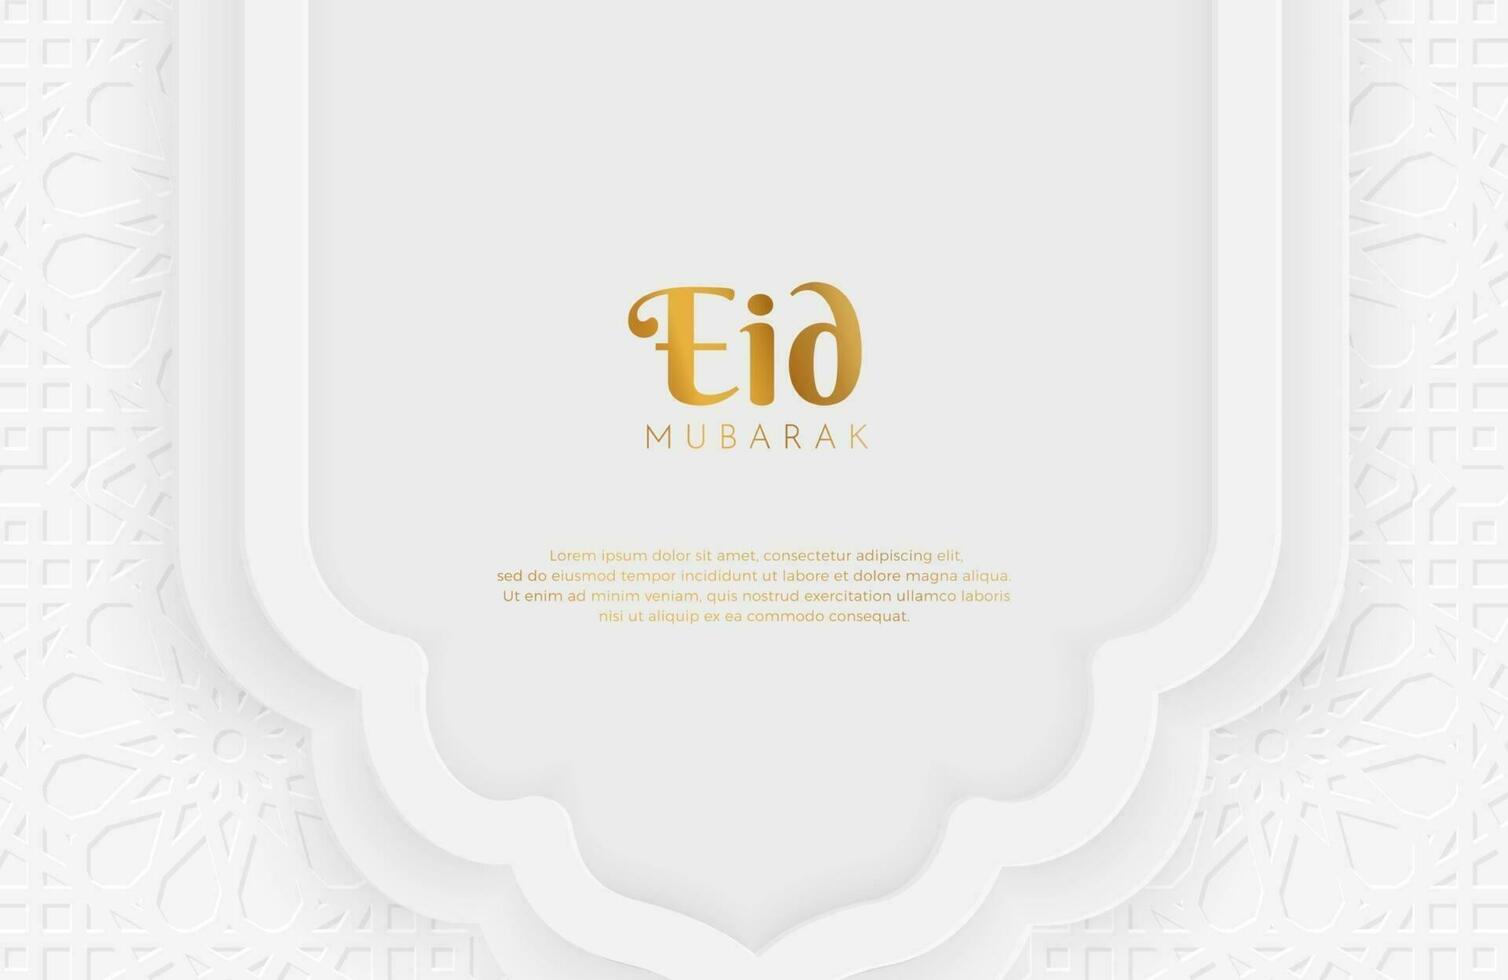 eid mubarak achtergrond met wit papier gesneden geometrische vorm vectorillustratie voor islamitische heilige maandvieringen vector